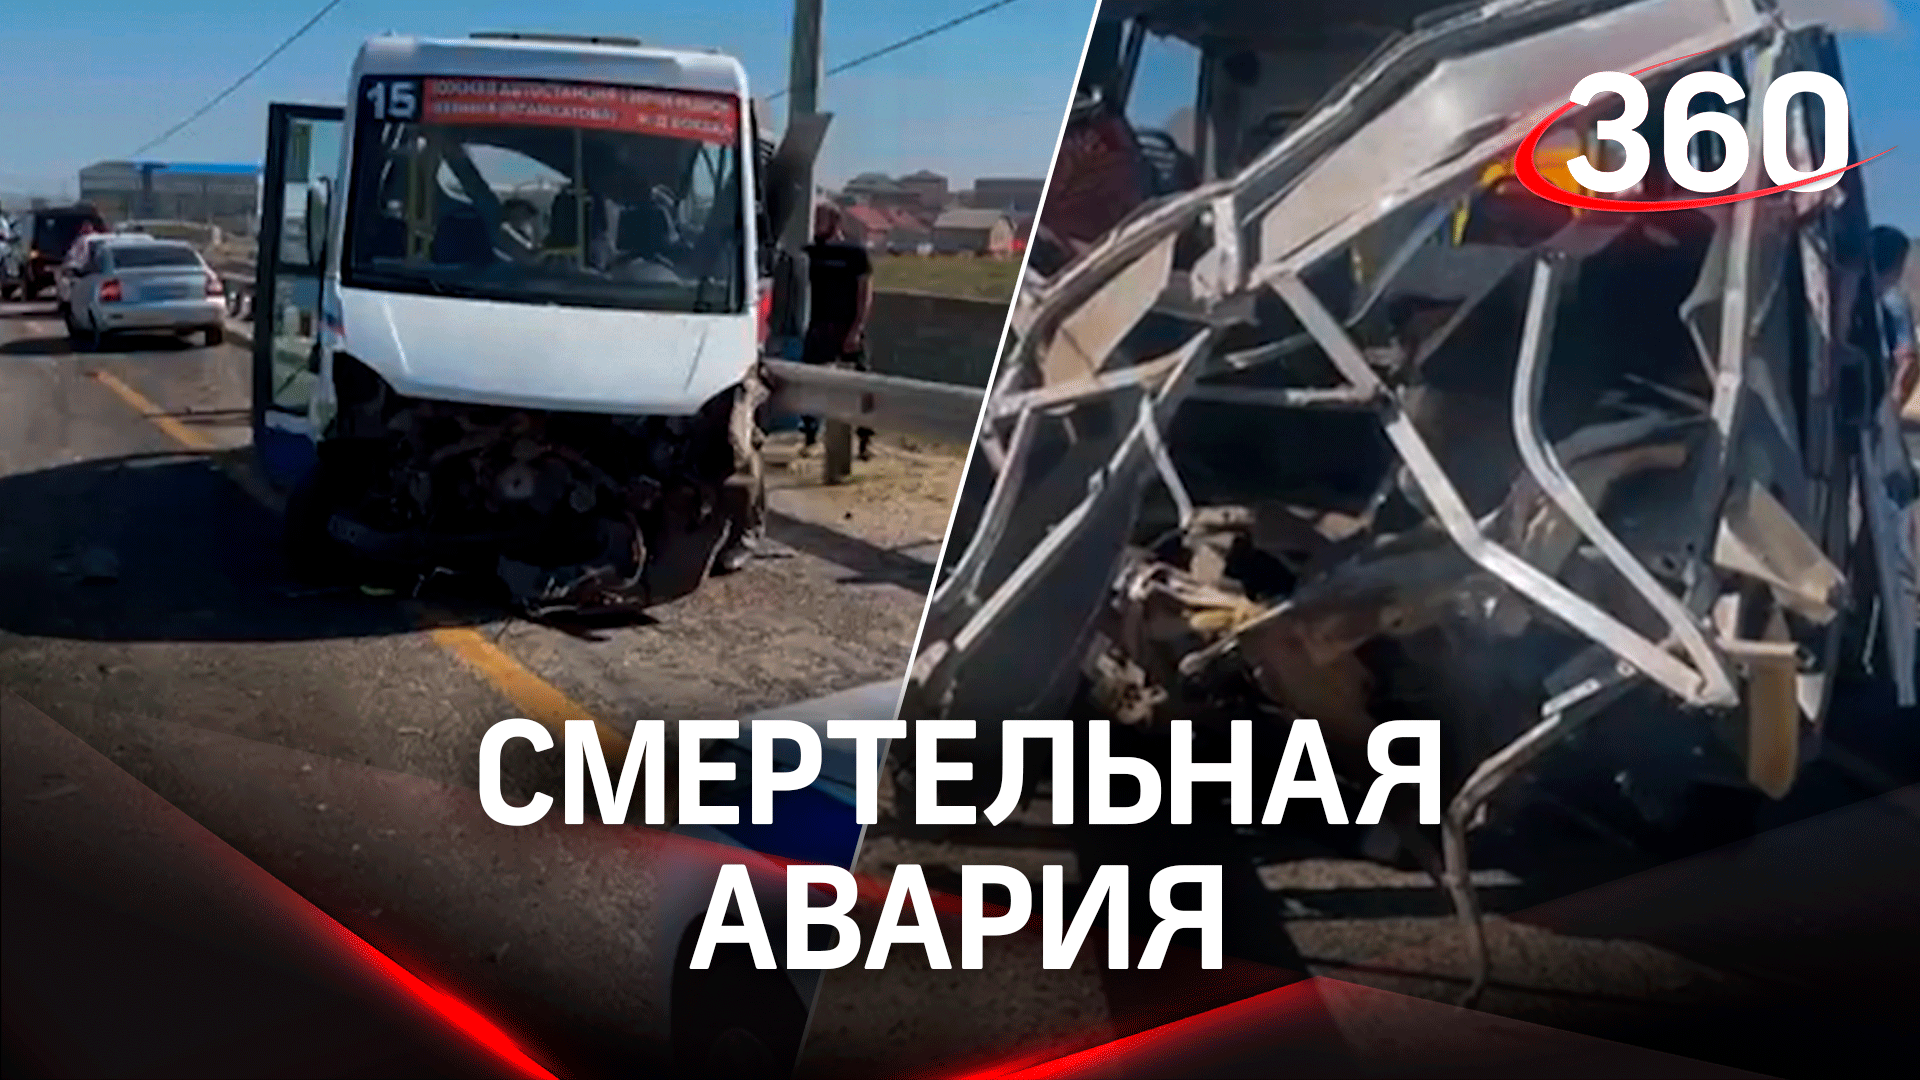 Смертельная авария: большегруз не справился с управление и врезался в две легковушки в Дагестане